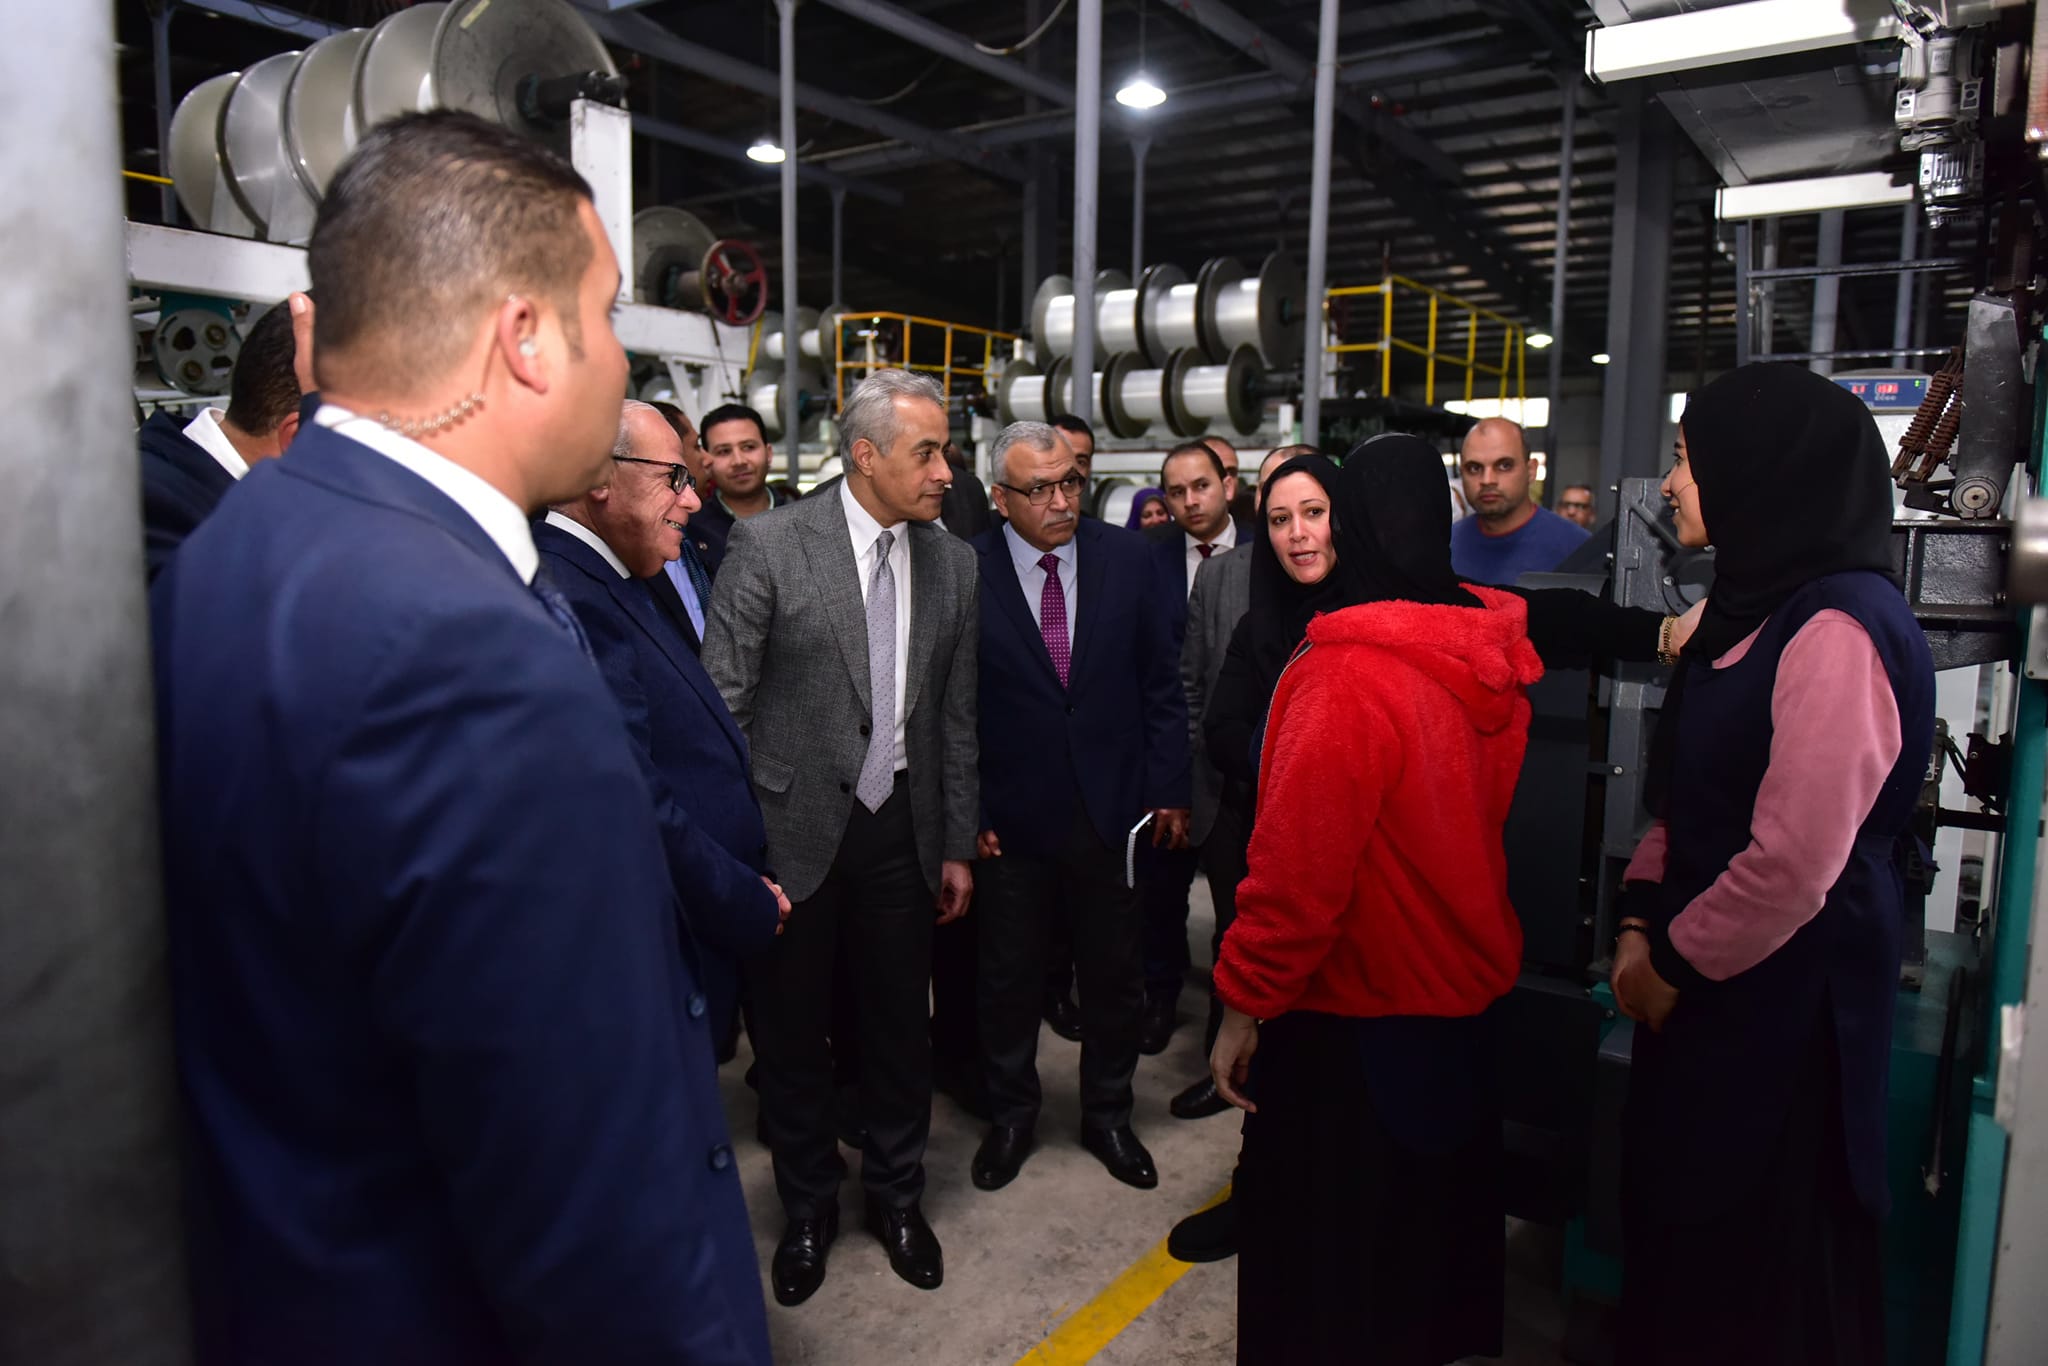 وزير العمل يصطحب محافظ بورسعيد لجولة داخل مصنع للبطاطين والسجاد والملابس الجاهزة (صور) 4